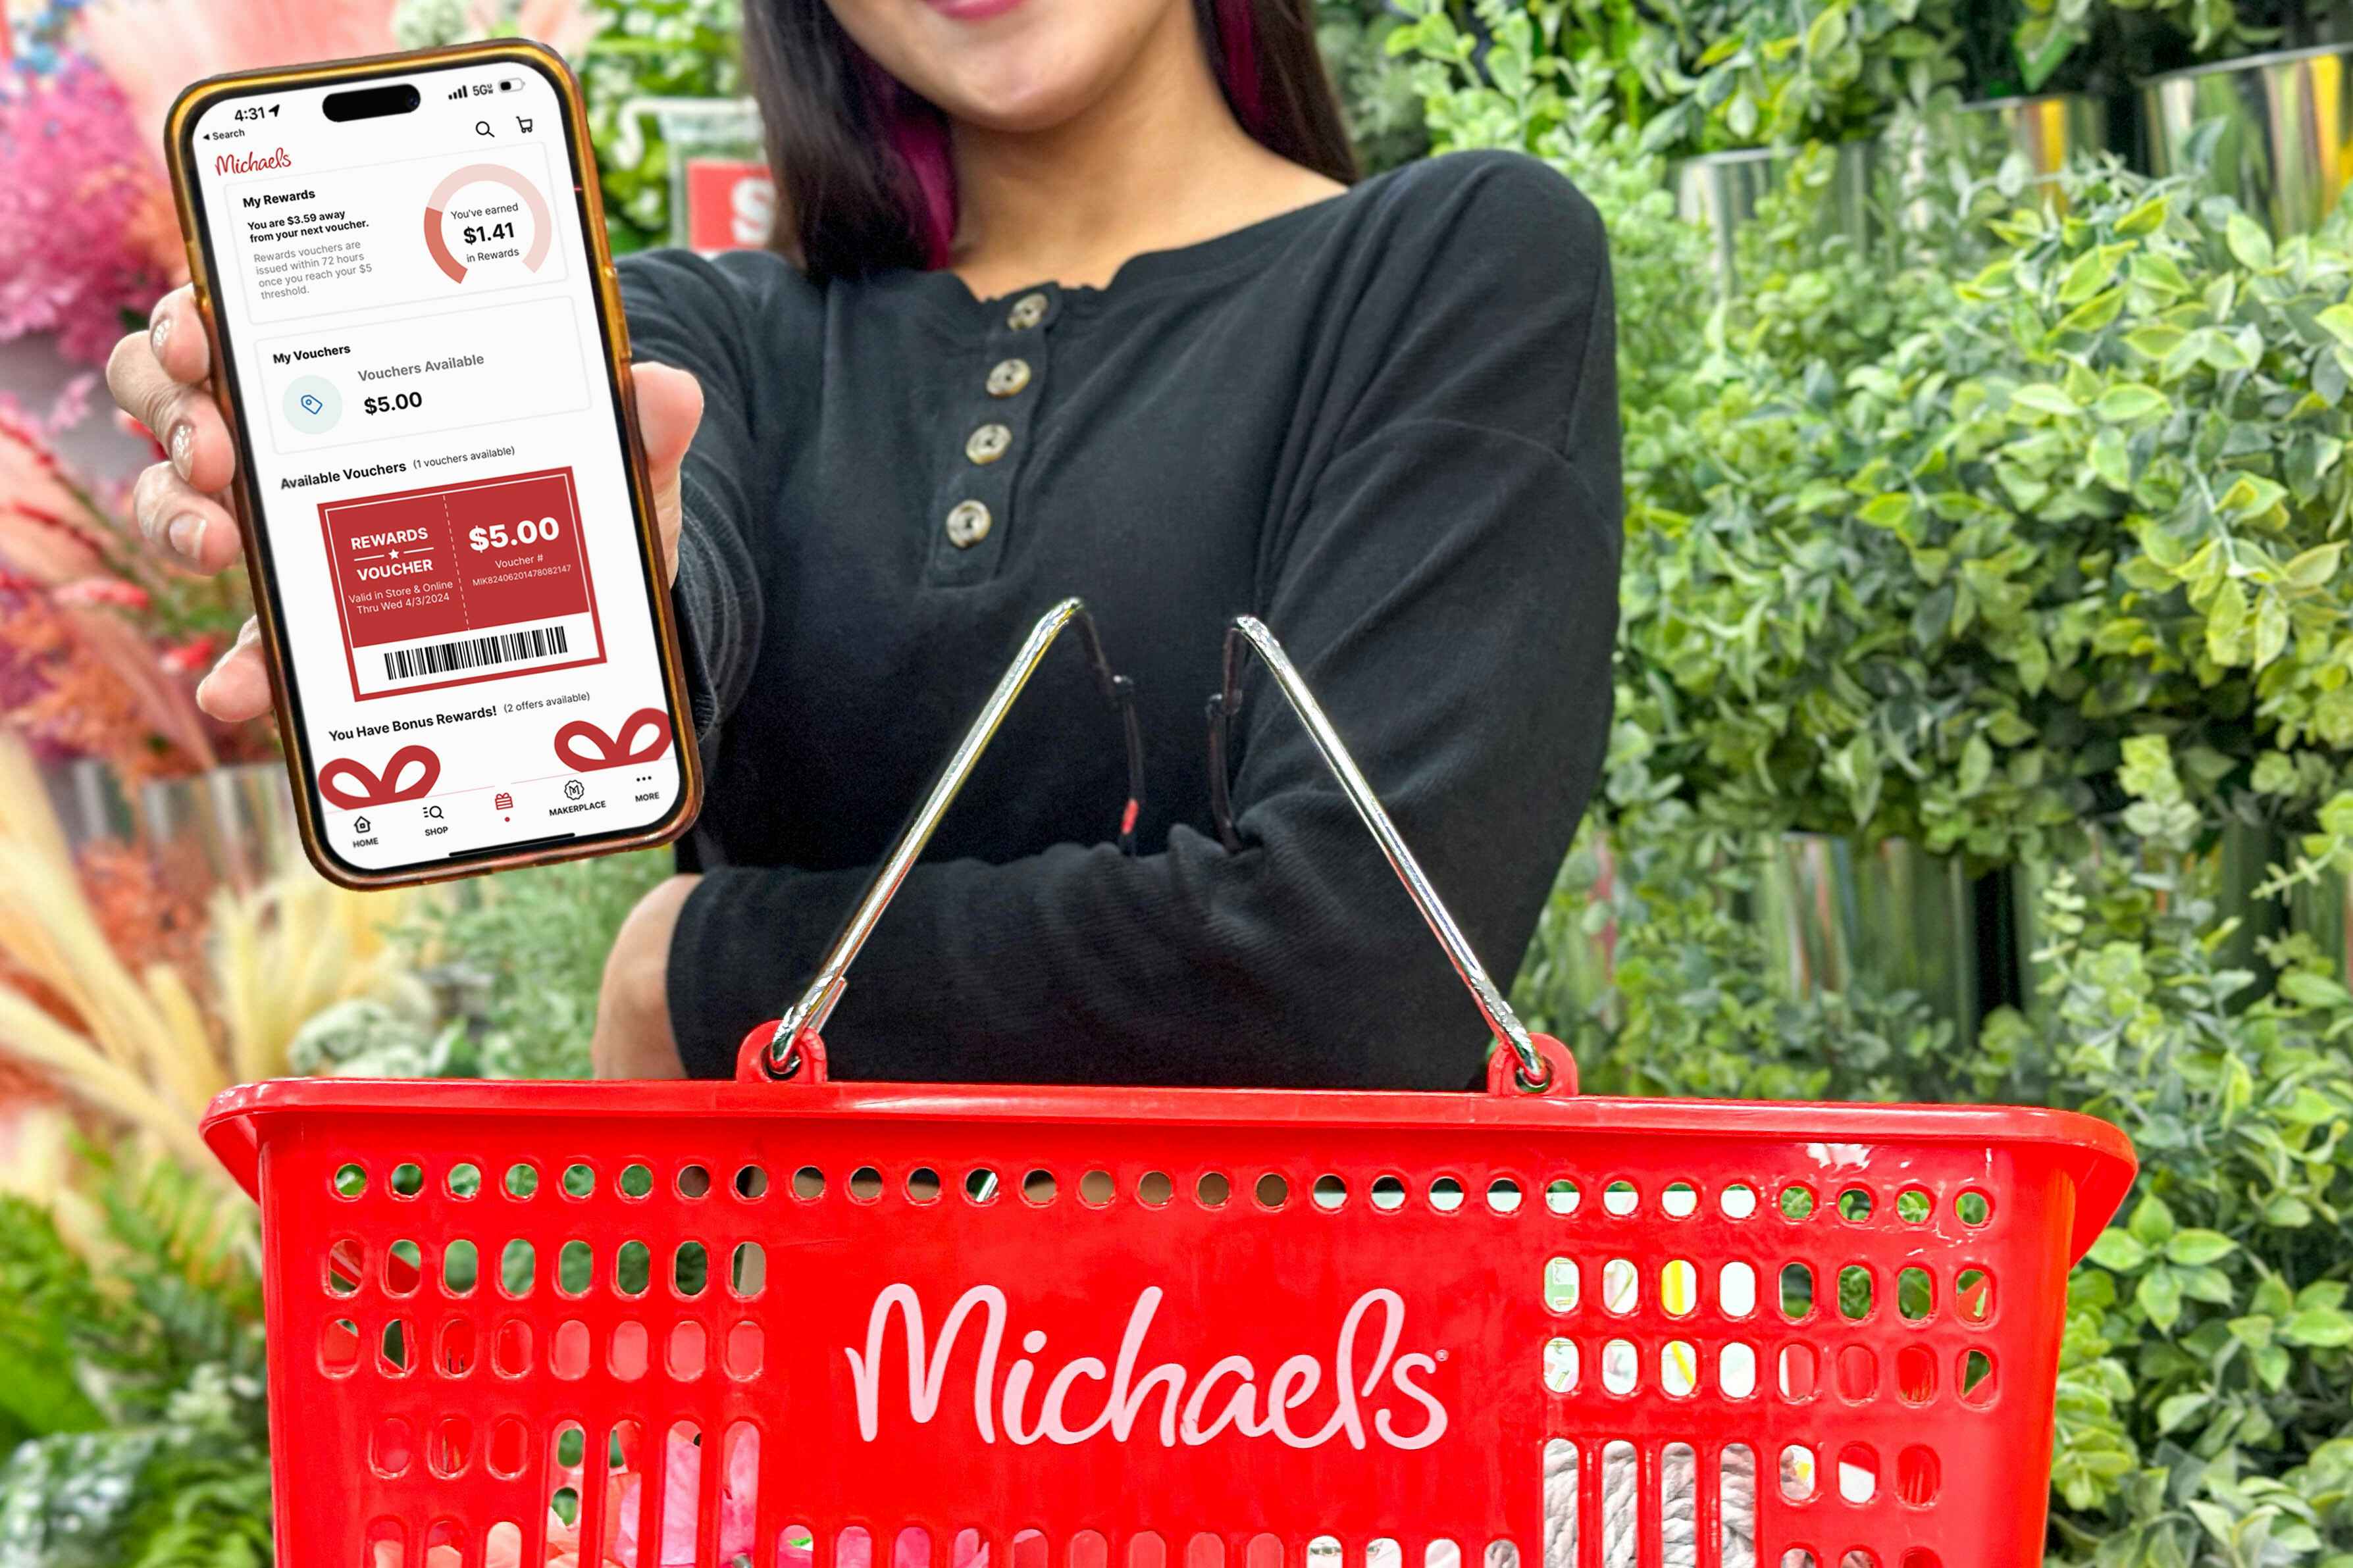 michaels-craft-store-rewards-app-voucher-kcl-model-3x2